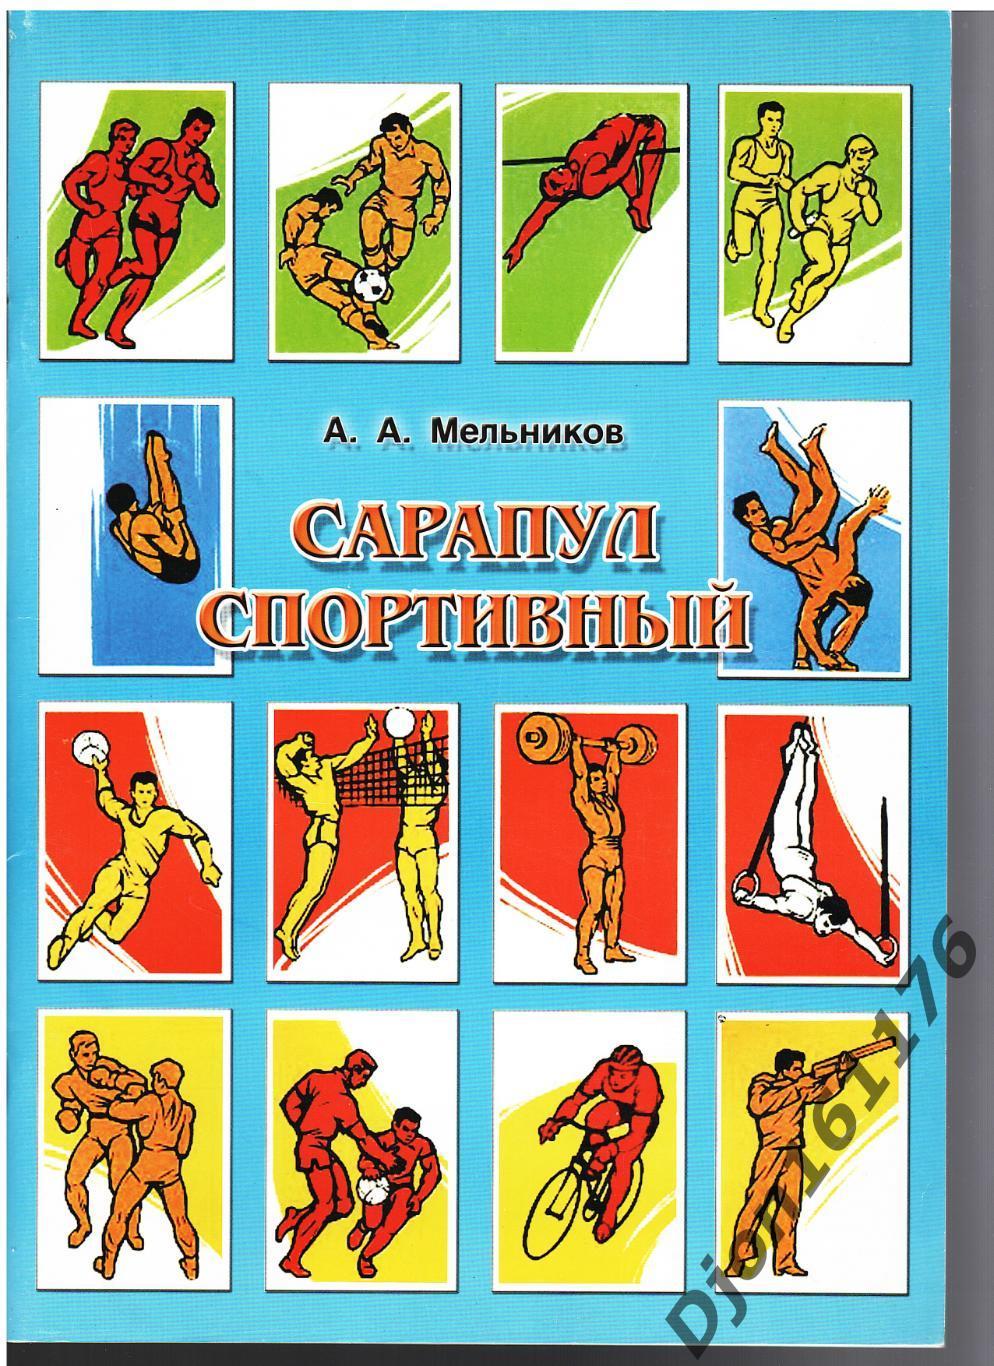 А.А.Мельников. «Сарапул спортивный». Сарапул.